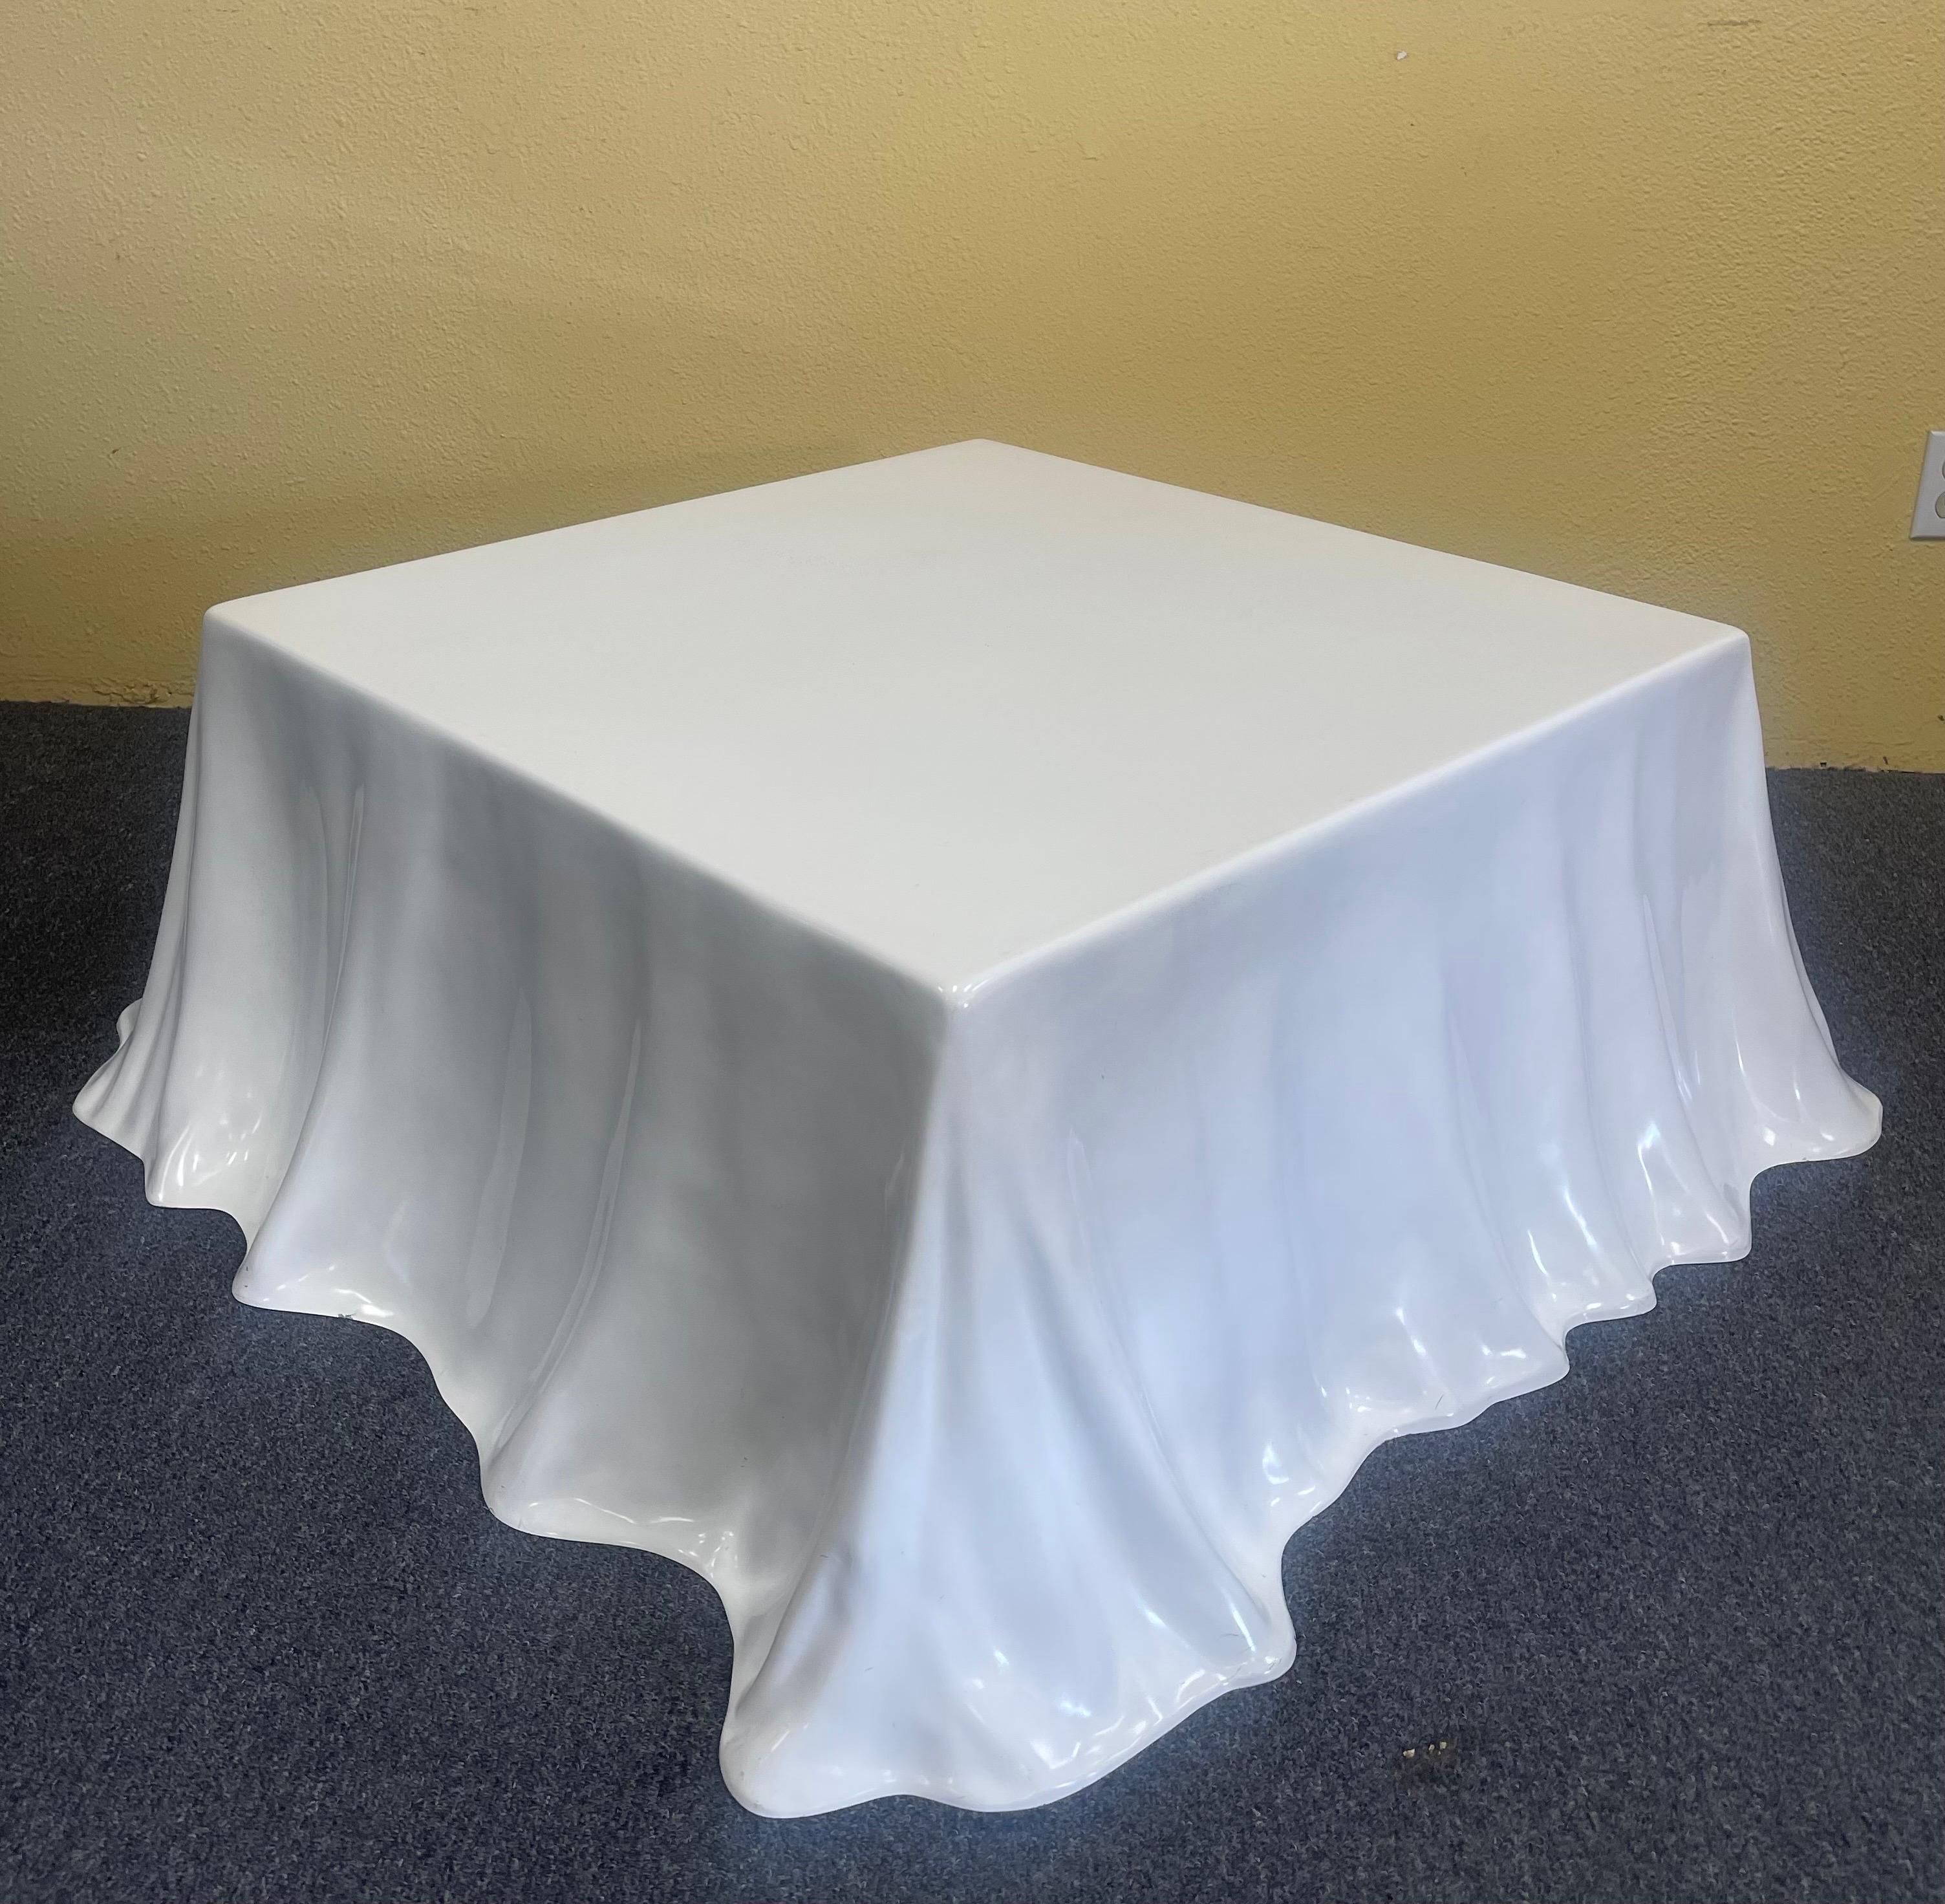 Rare Tovaglia / Tablecloth Coffee Table by Alberto Bazzani for Studio Tetrarch 9